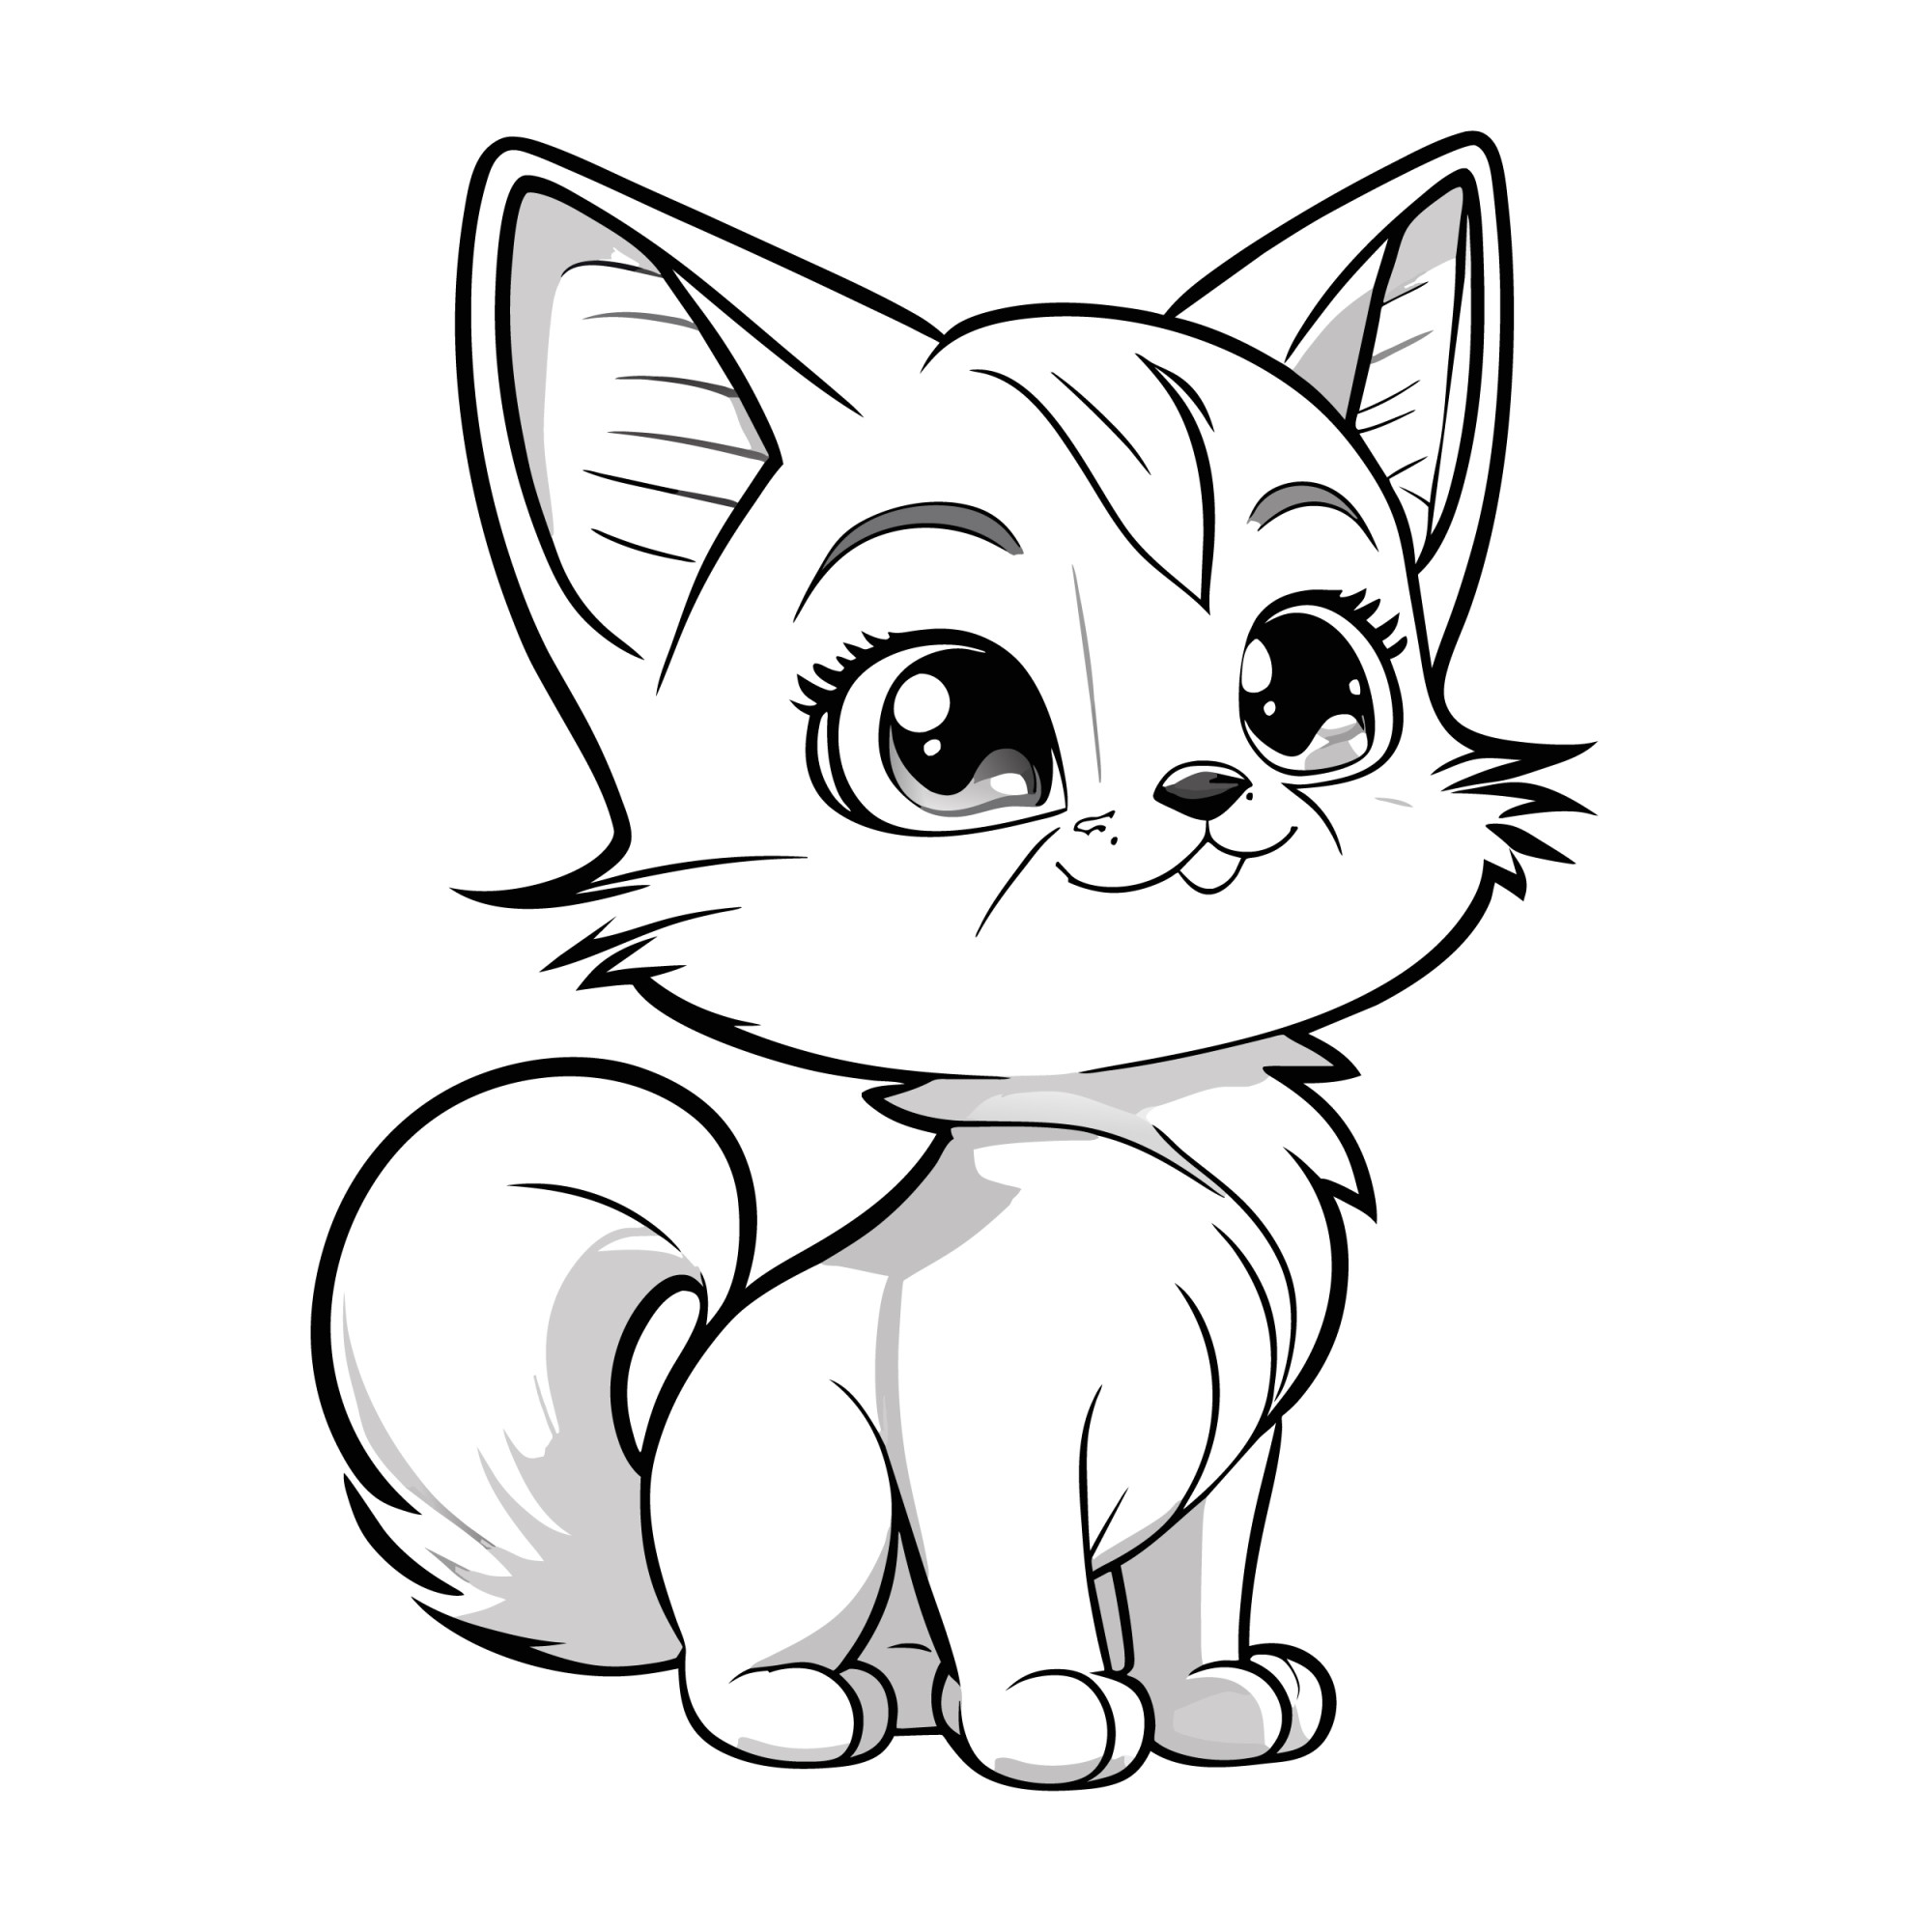 Раскраска для детей: аниме котенок пушистый хвост